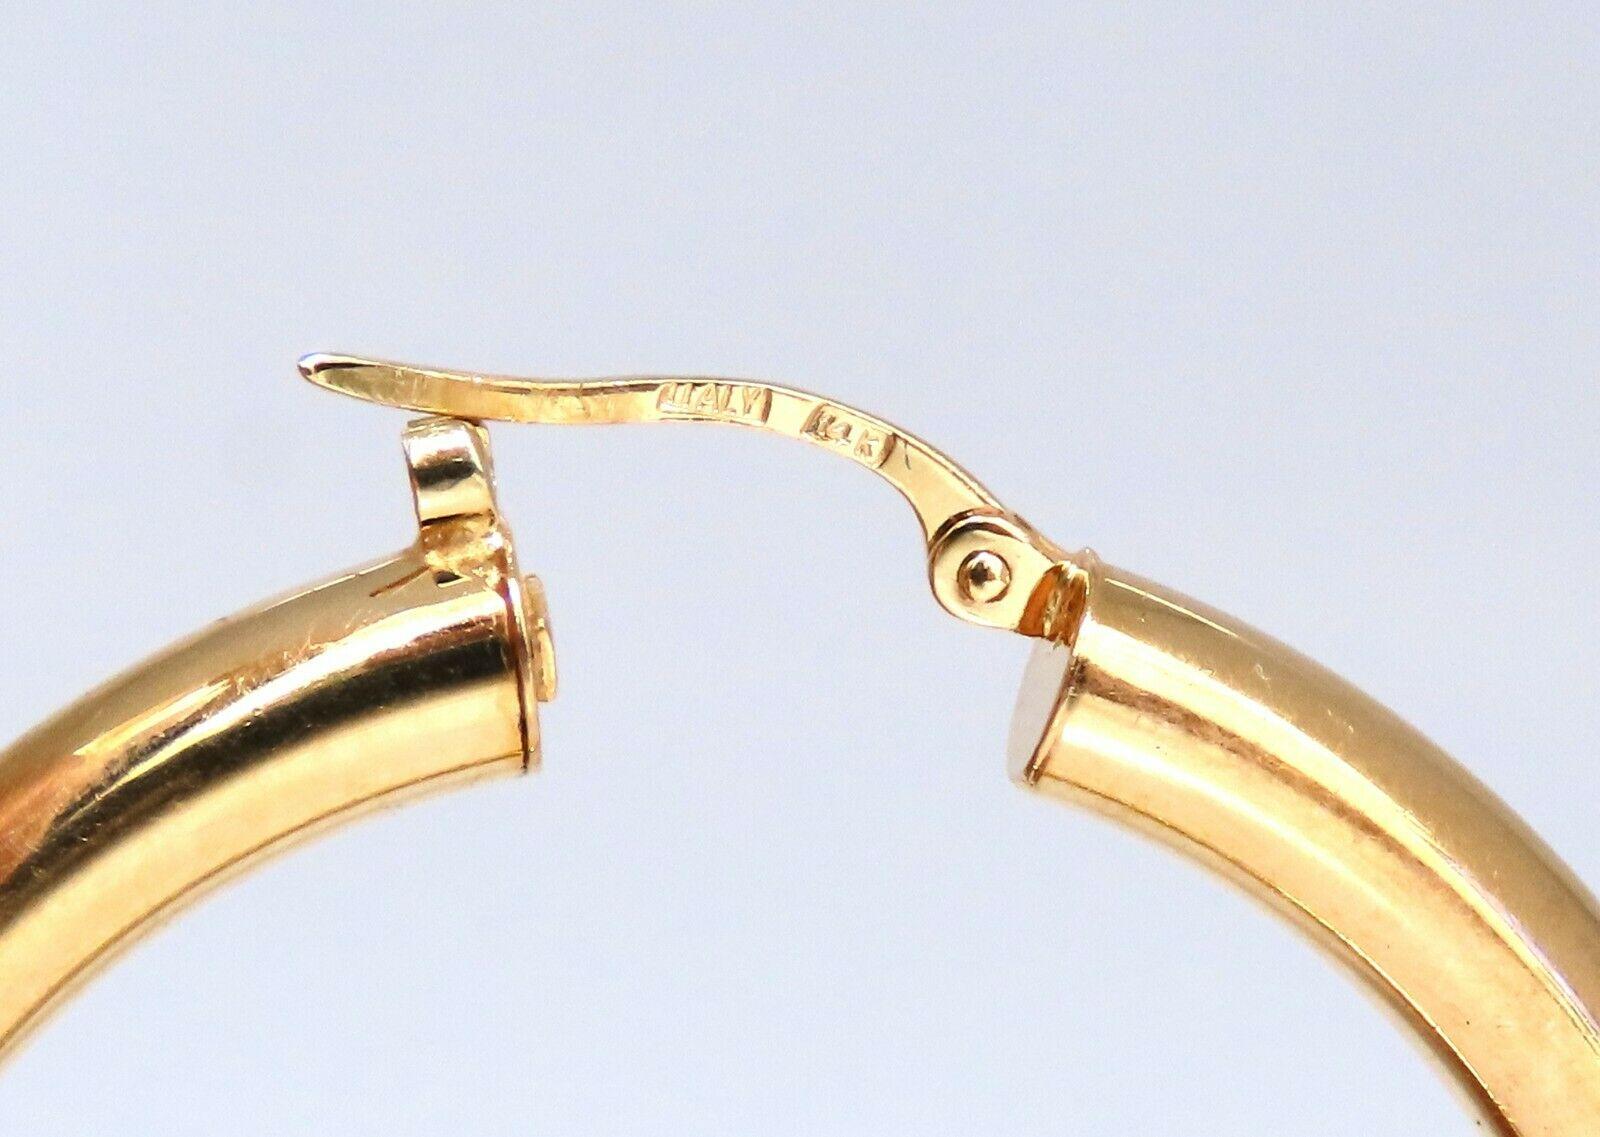 Goldreifen-Ohrringe

Abmessungen der Ohrringe:

37 mm Durchmesser.

4 mm breit.

5 Gramm / 14kt. Gelbgold

Ohrringe sind wunderschön gemacht